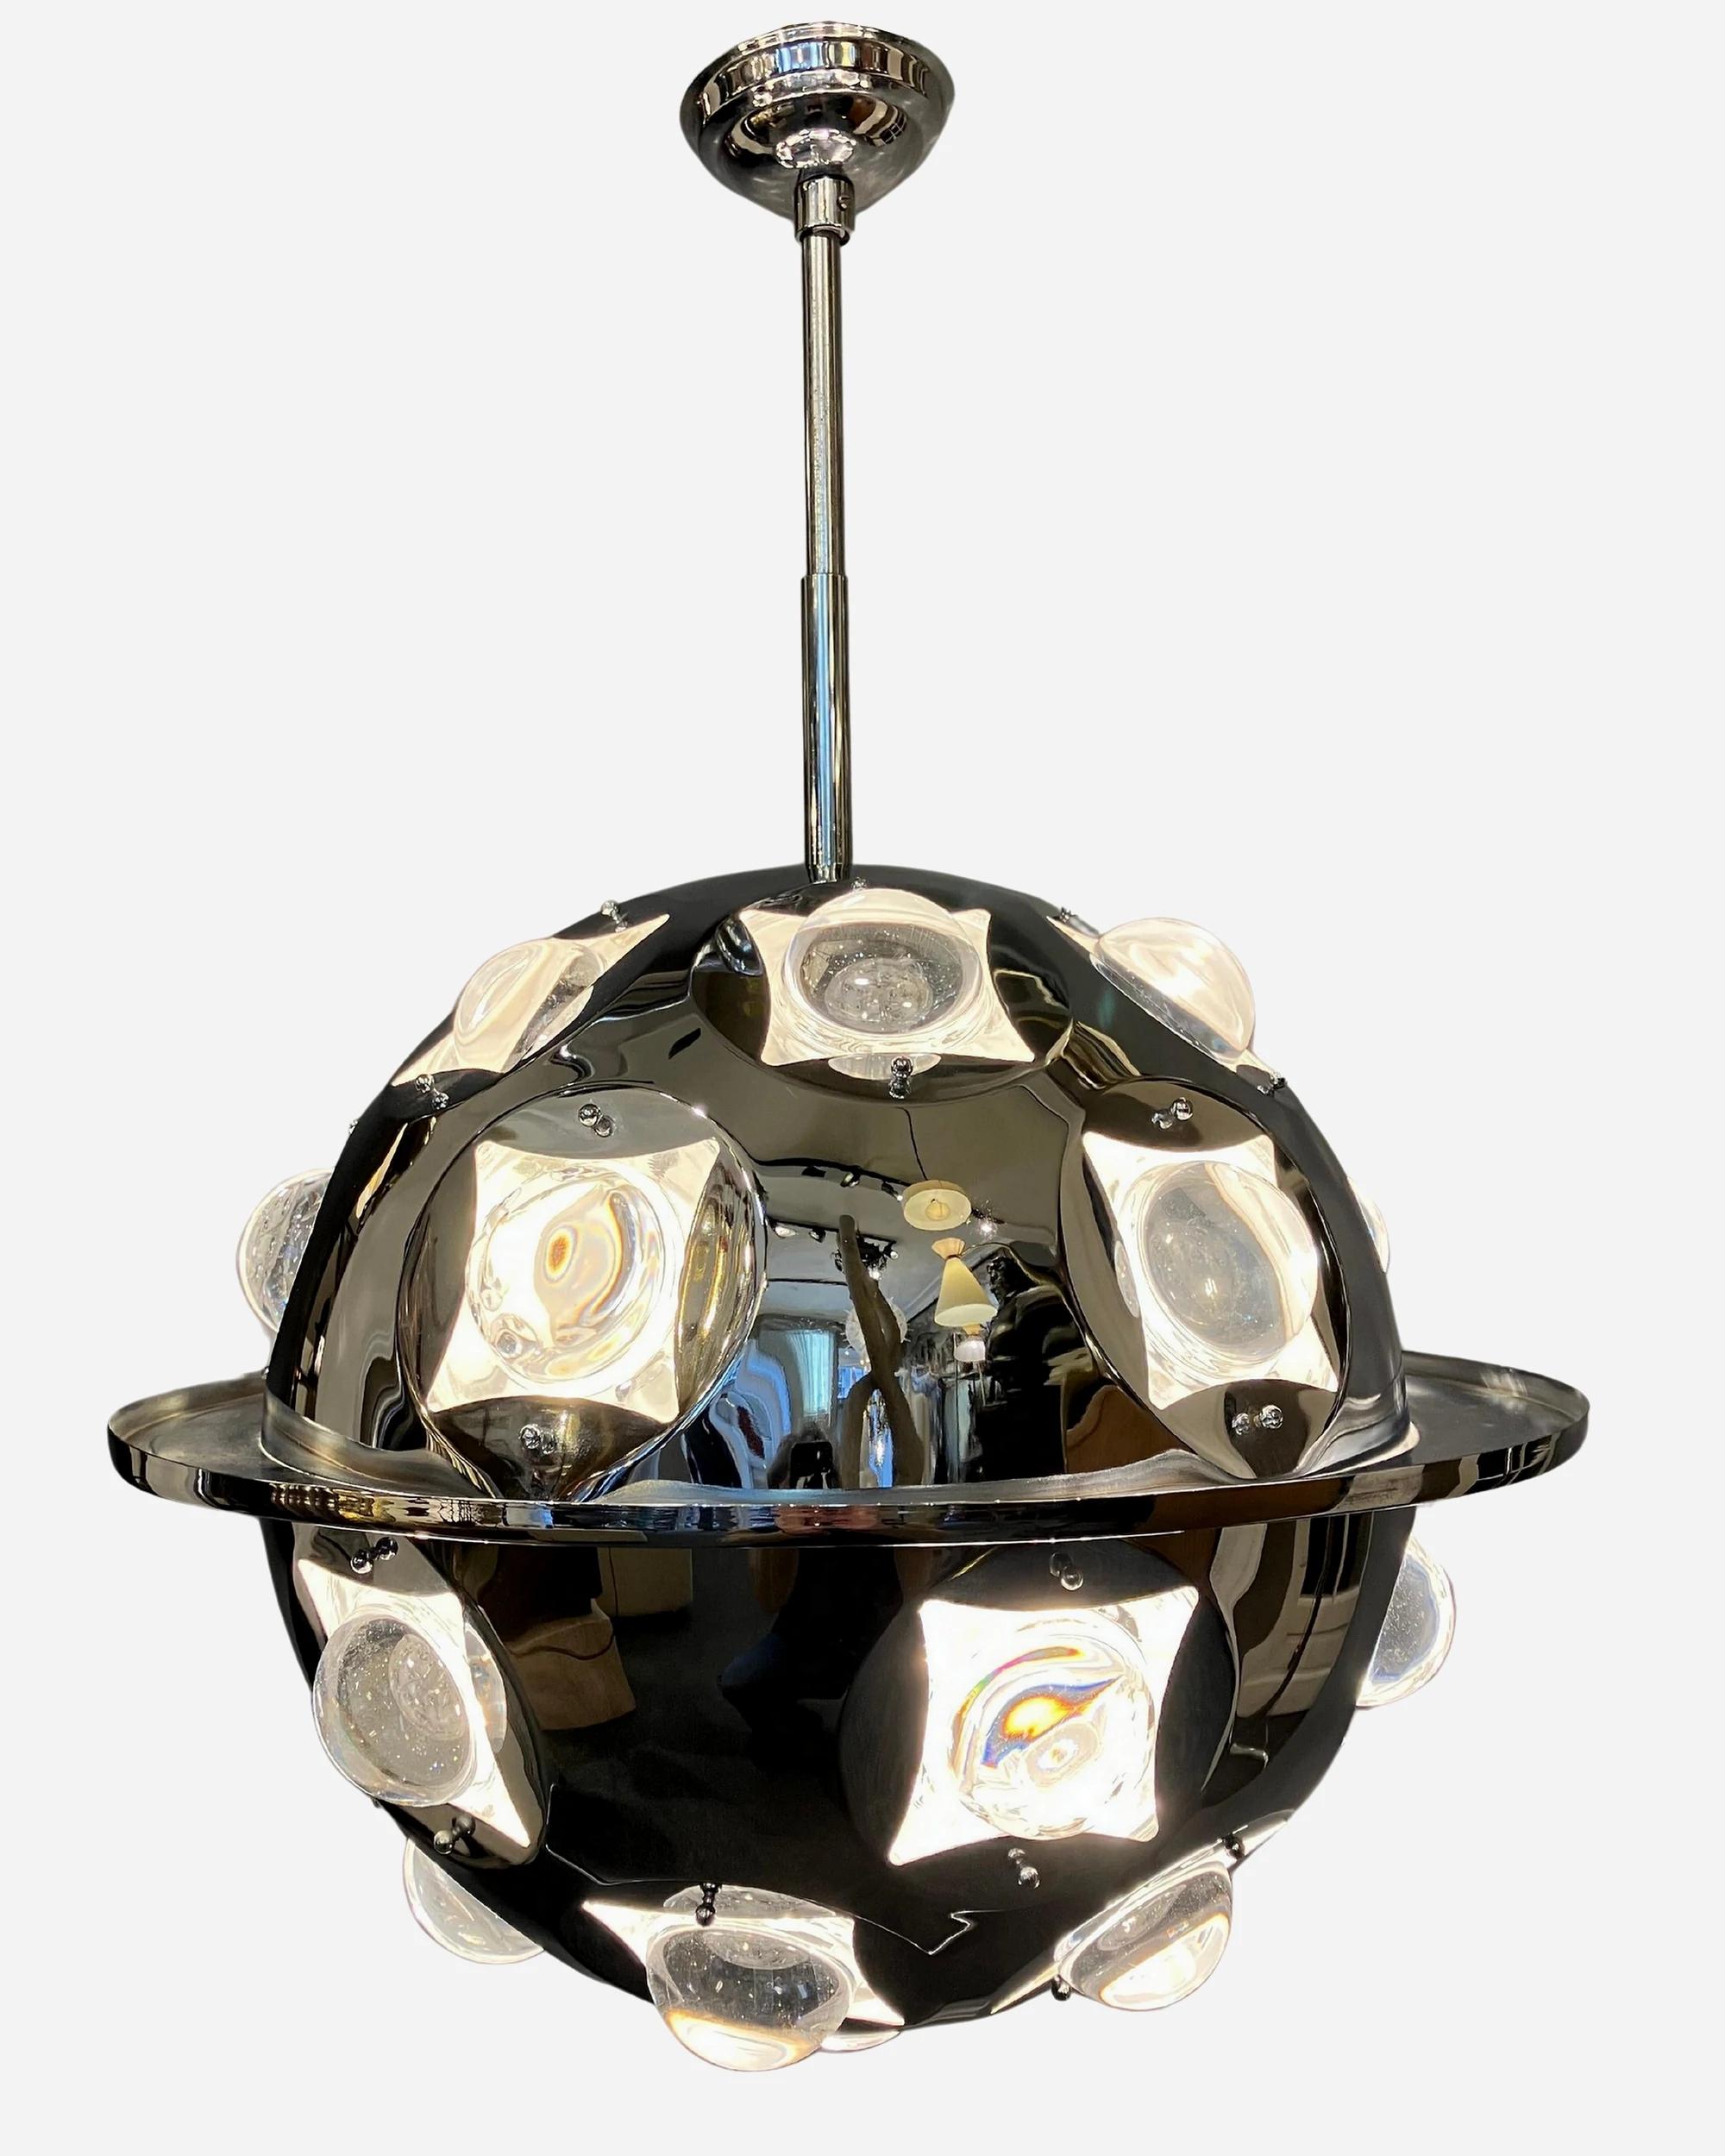 Lustre Sputnik conçu par Oscar Torlasco, pour Lumi Italie, dans les années 1960. Structure chromée avec des lentilles en verre optique qui réfléchissent la lumière dans toutes les directions. En très bon état d'origine.

Le prix est indiqué pour